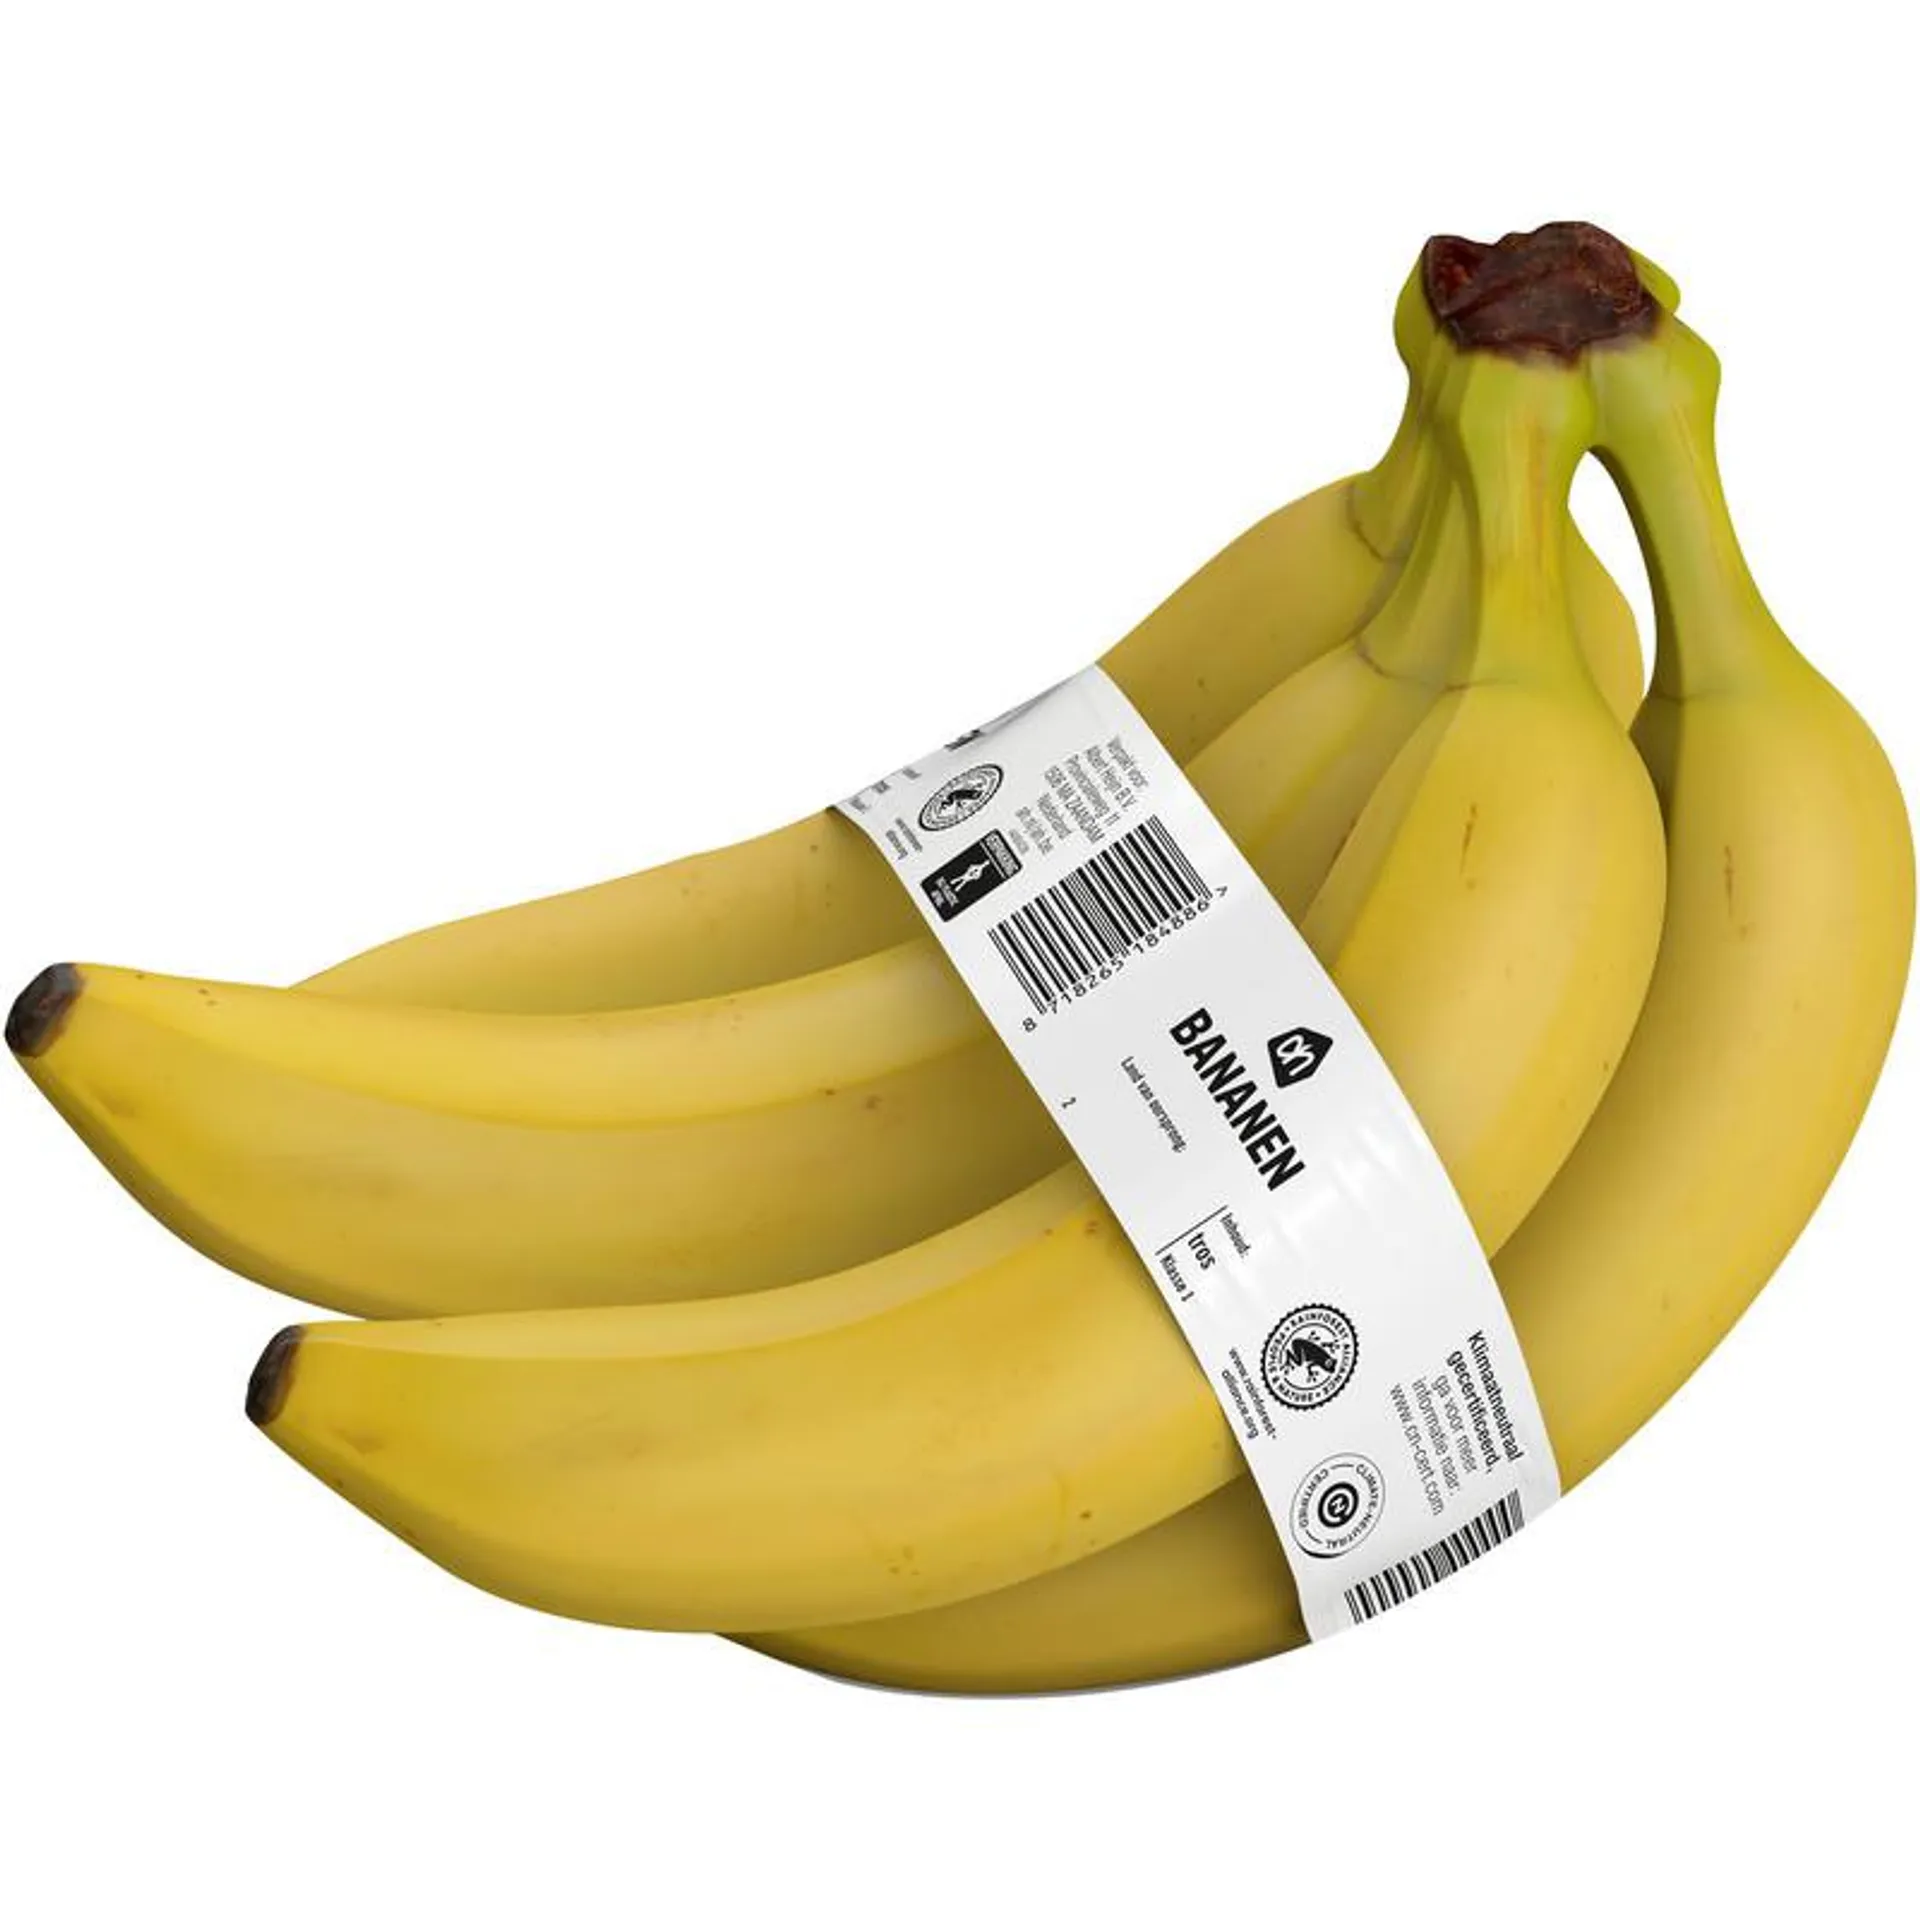 AH Bananen tros